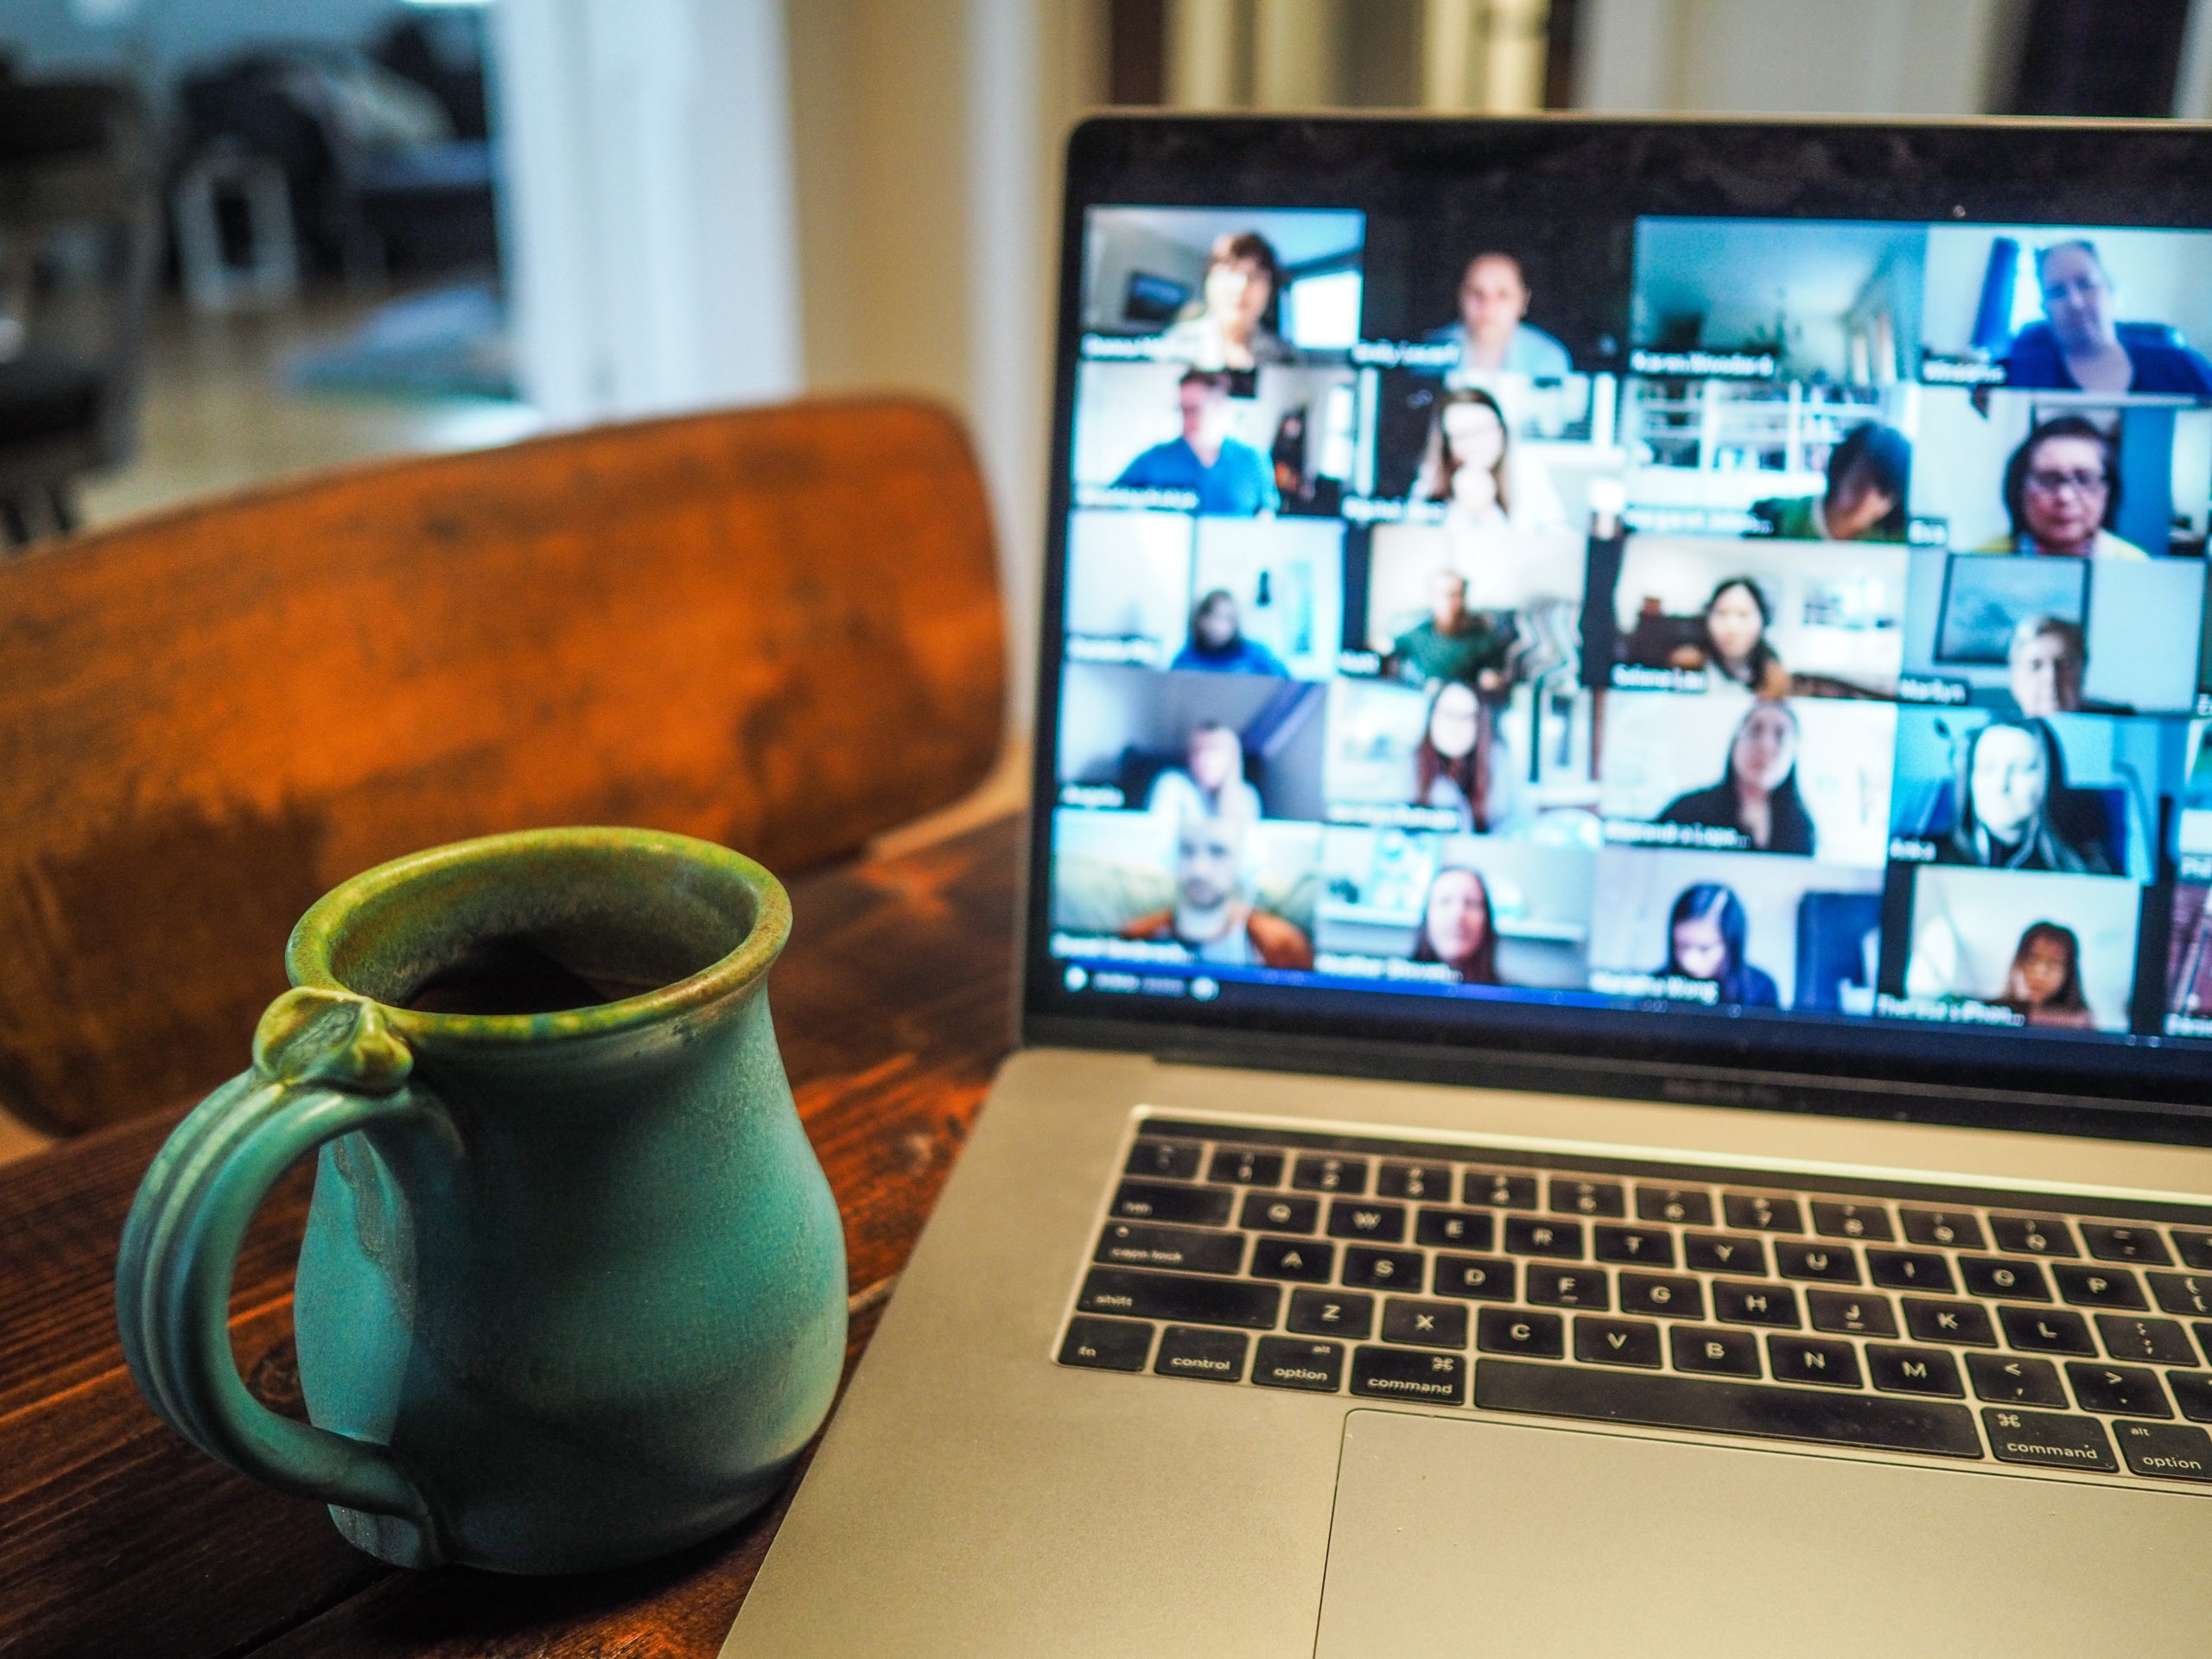 Coffee mug next to laptop showing virtual meeting attendees